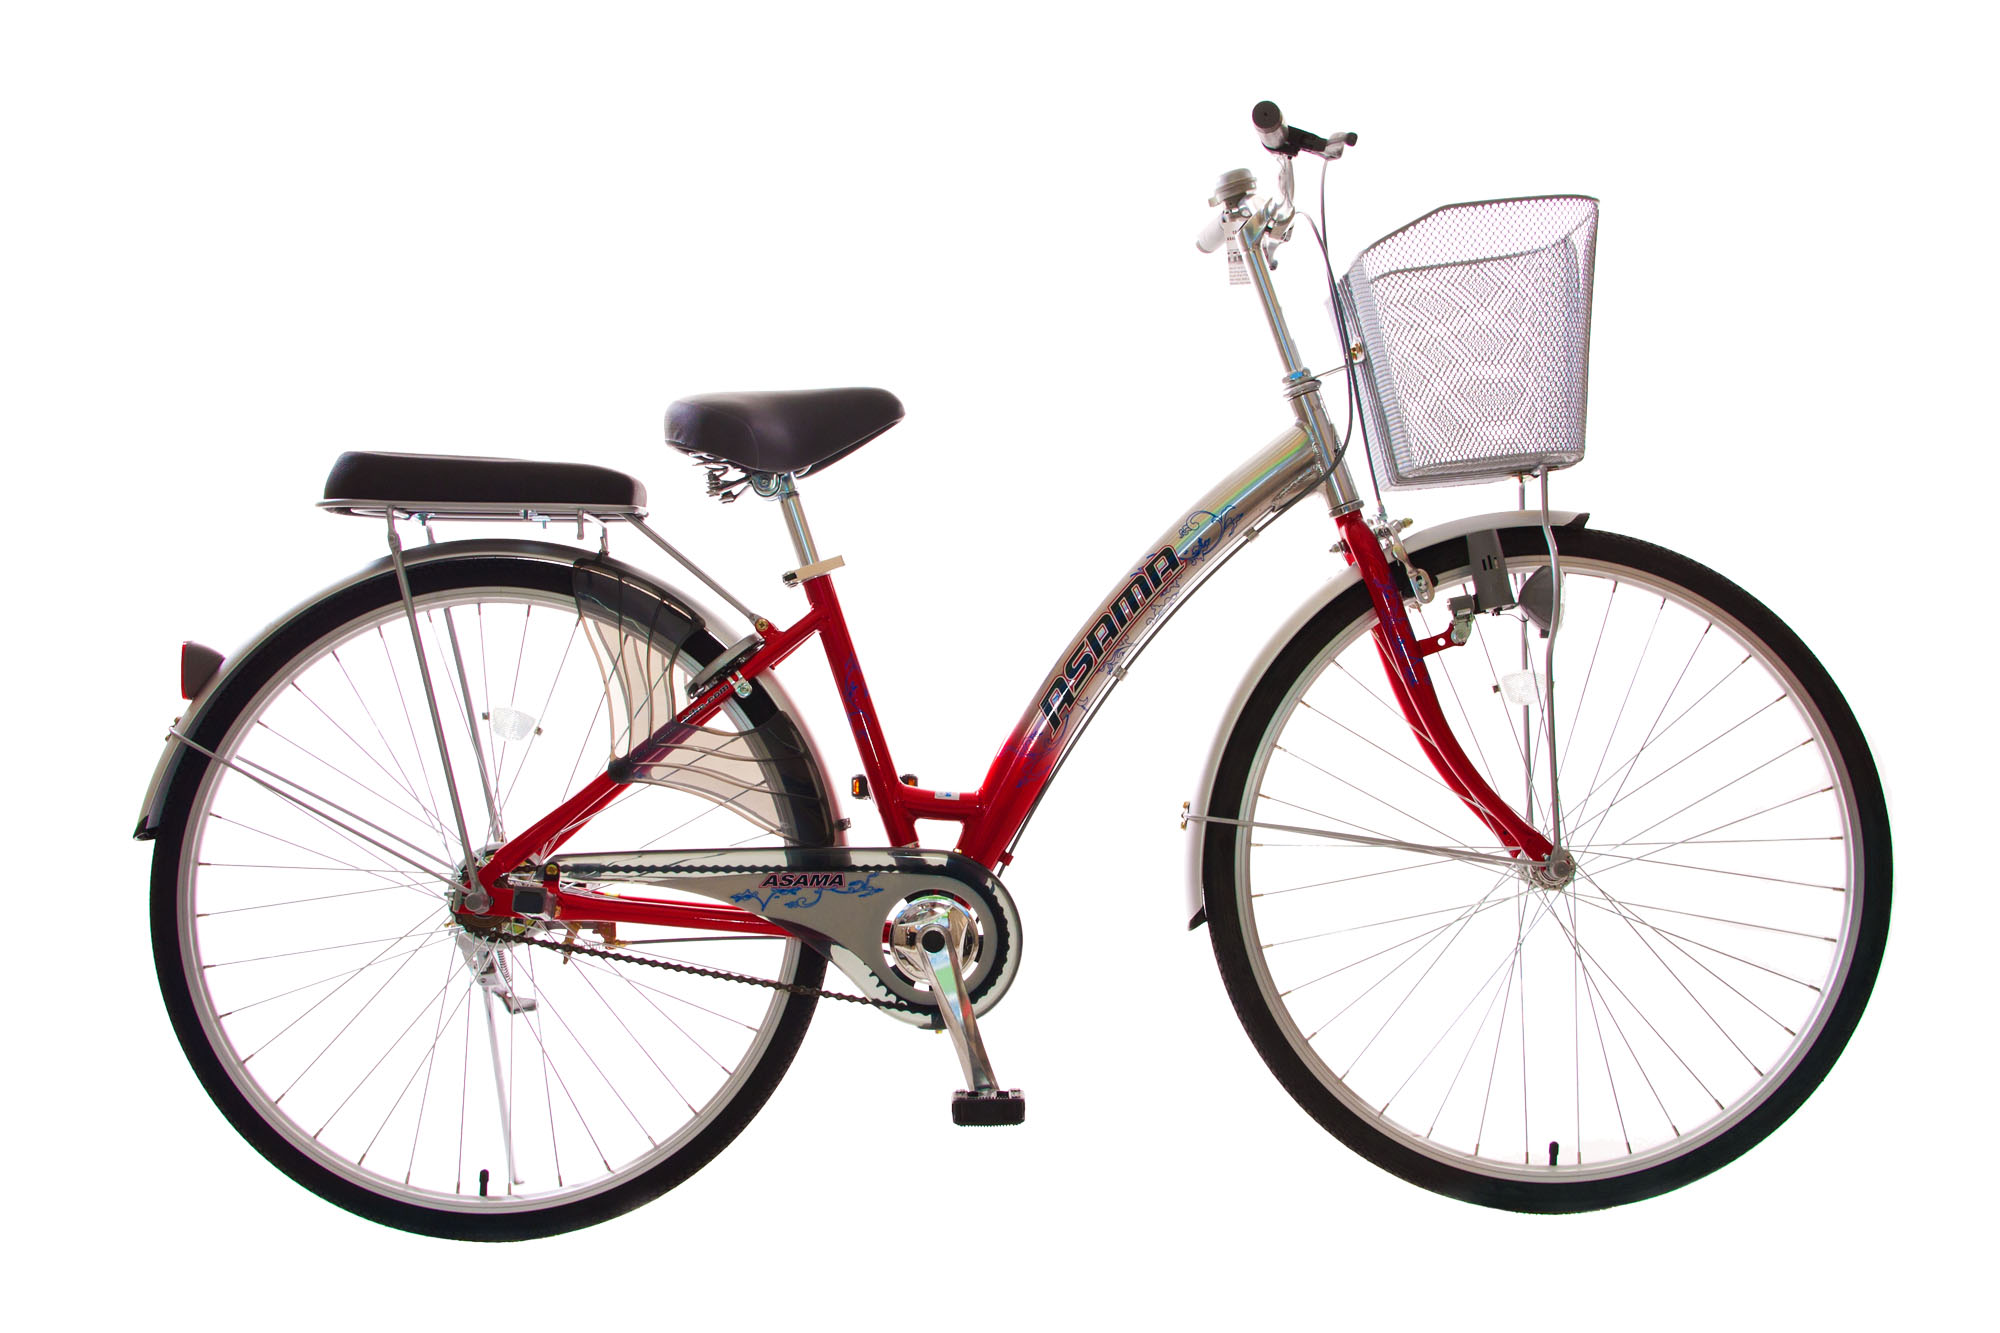 Xe đạp màu đỏ đại diện cho sự rực rỡ, đầy sức sống và cũng gợi lên những kỷ niệm đầy ý nghĩa. Hình ảnh các chiếc xe đạp này đưa ta trở thành một phi công đam mê, bay lượn trên những cung đường tươi đẹp và mở ra những trang mới trong cuộc sống. Cùng cảm nhận chúng qua những hình ảnh tuyệt đẹp!